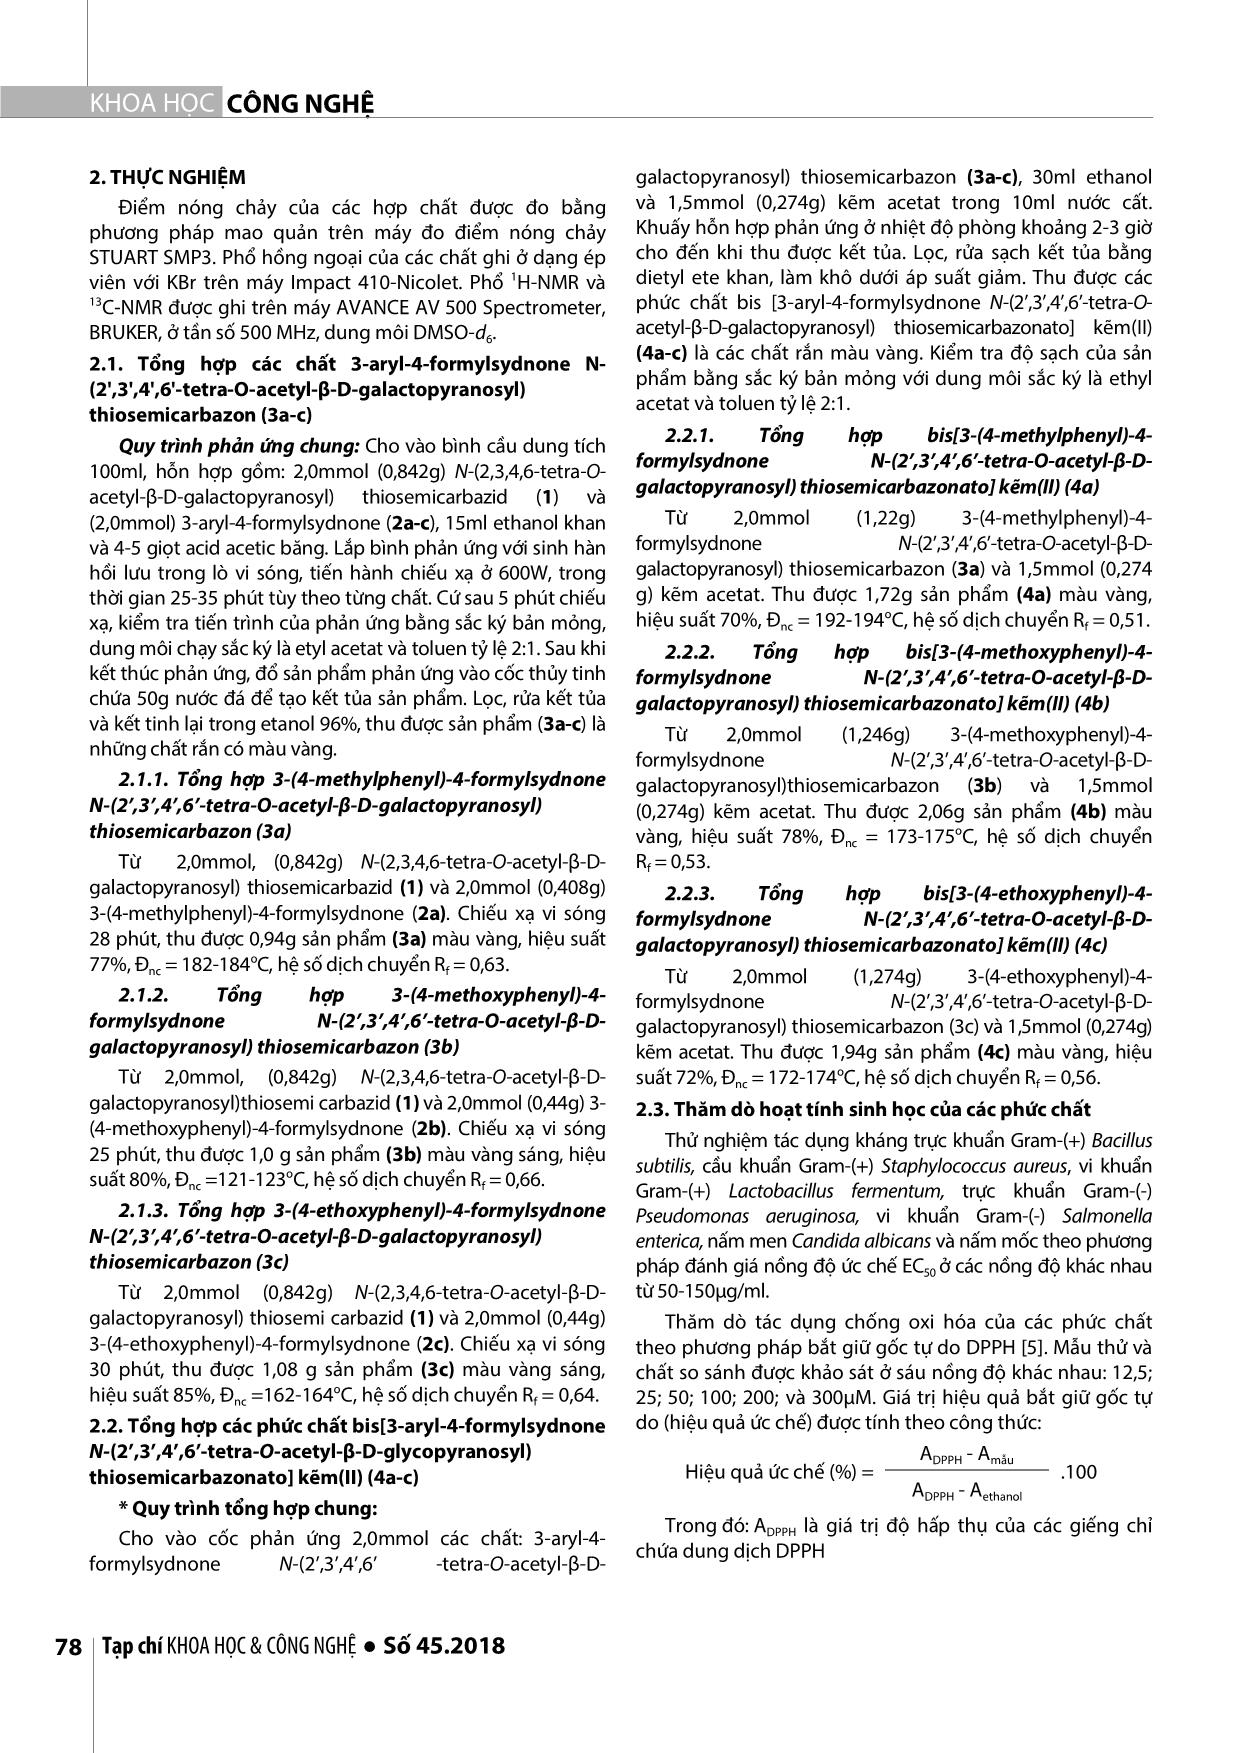 Nghiên cứu tổng hợp một số phức chất bis [3-Aryl-4- formylsydnone n-(2’,3’,4’,6’-tetra-o-acetyl-β-dgalatopyranosyl) thiosemicarbazonato] kẽm(II) trang 2